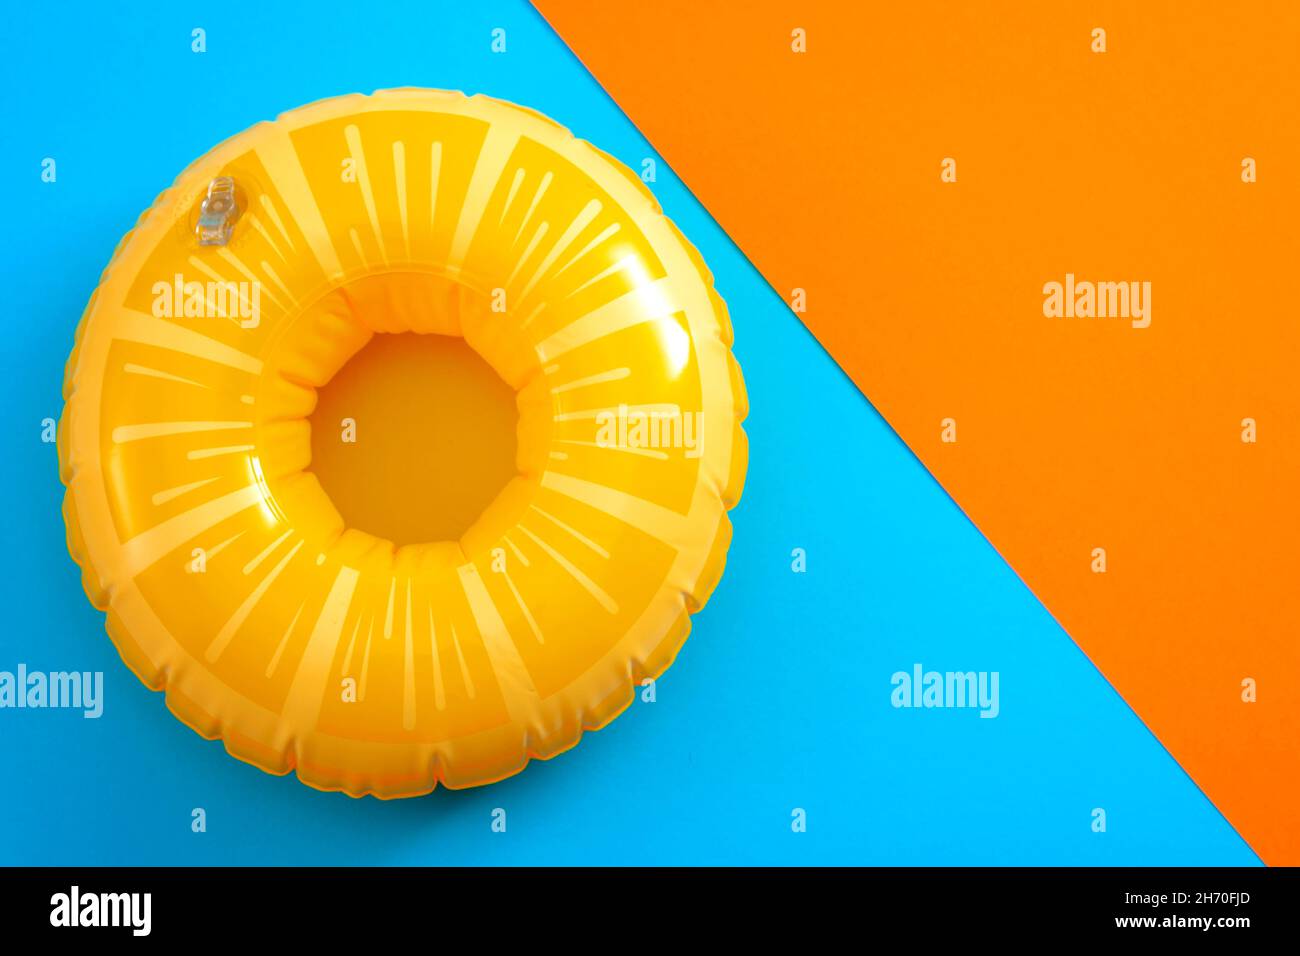 Vacances d'été et équipement de sécurité pour la natation avec une bouée de vie isolée sur un fond minimaliste orange et bleu avec espace copie Banque D'Images